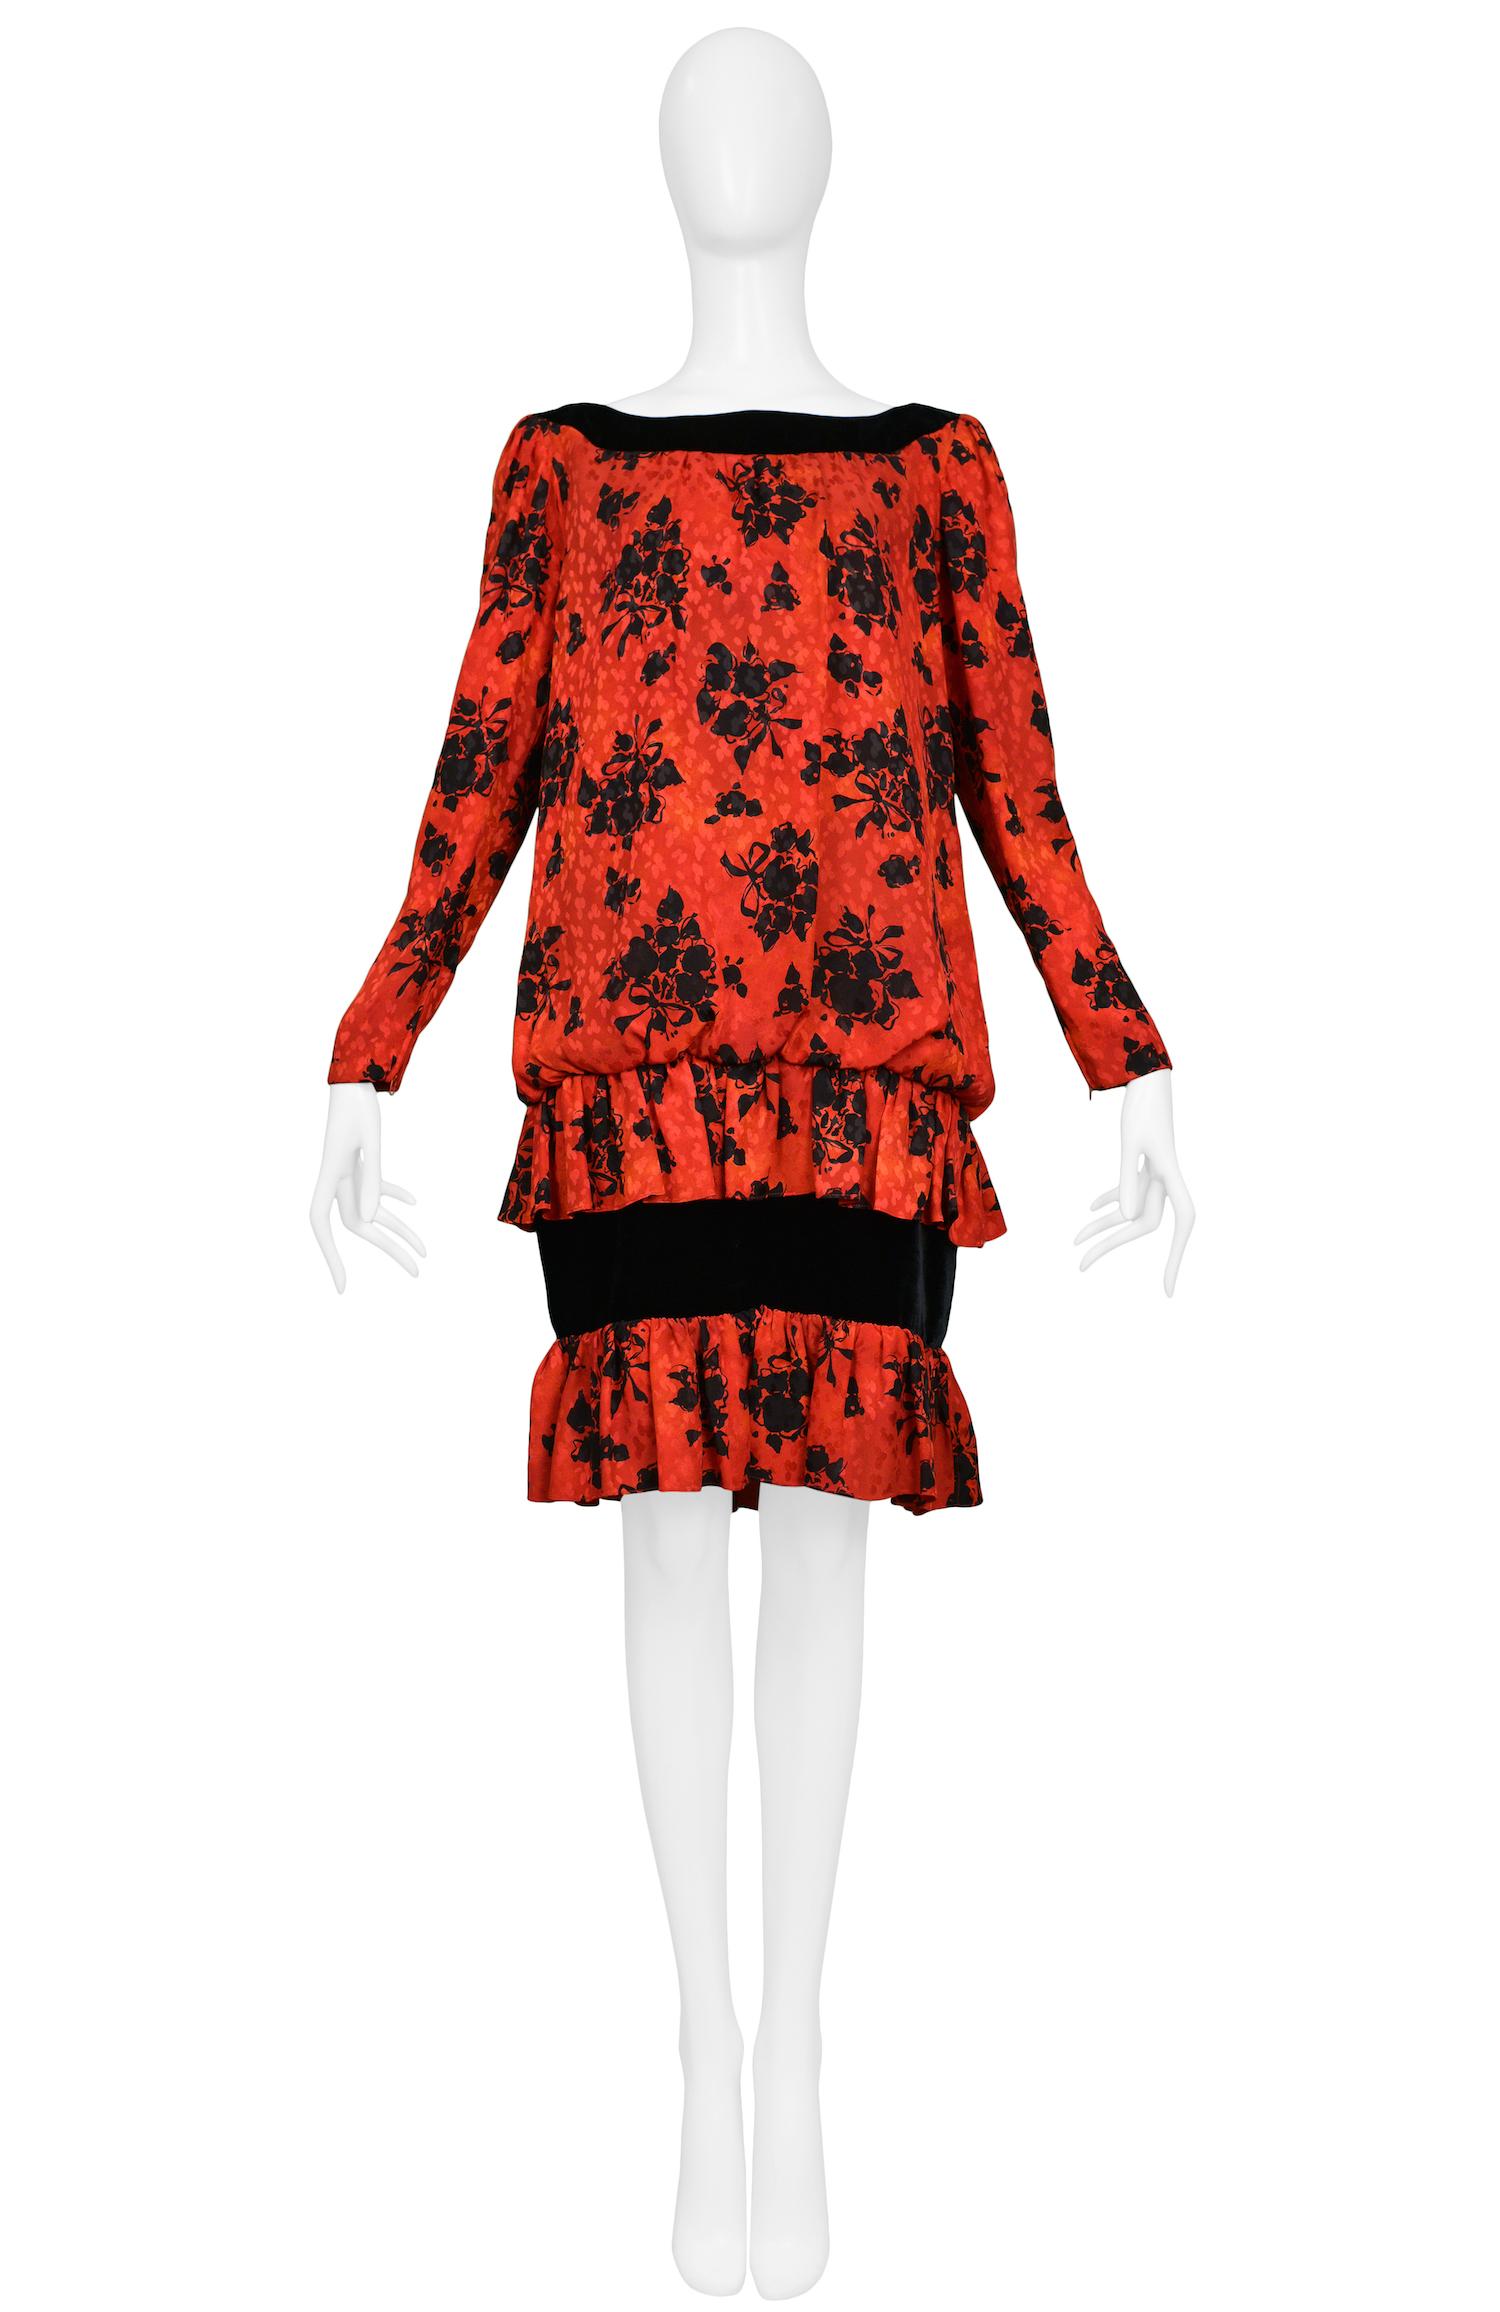 Robe Vintage Yves Saint Laurent en soie rouge à taille basse avec imprimé floral noir et détails en velours noir. La robe présente un col ouvert, des manches droites et une longueur au genou.

Excellent état vintage.

Taille 38